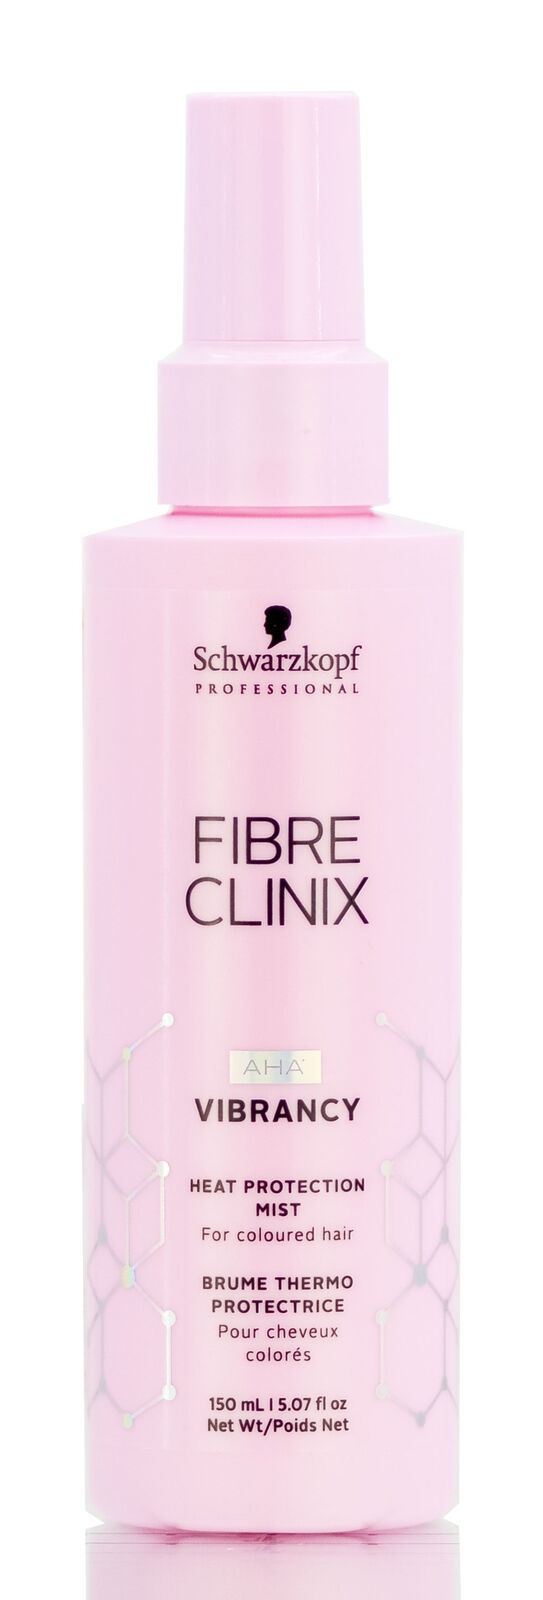 Schwarzkopf Fibre Clinix AHA Vibrancy Heat Protection Mist - 5.07oz - $31.00